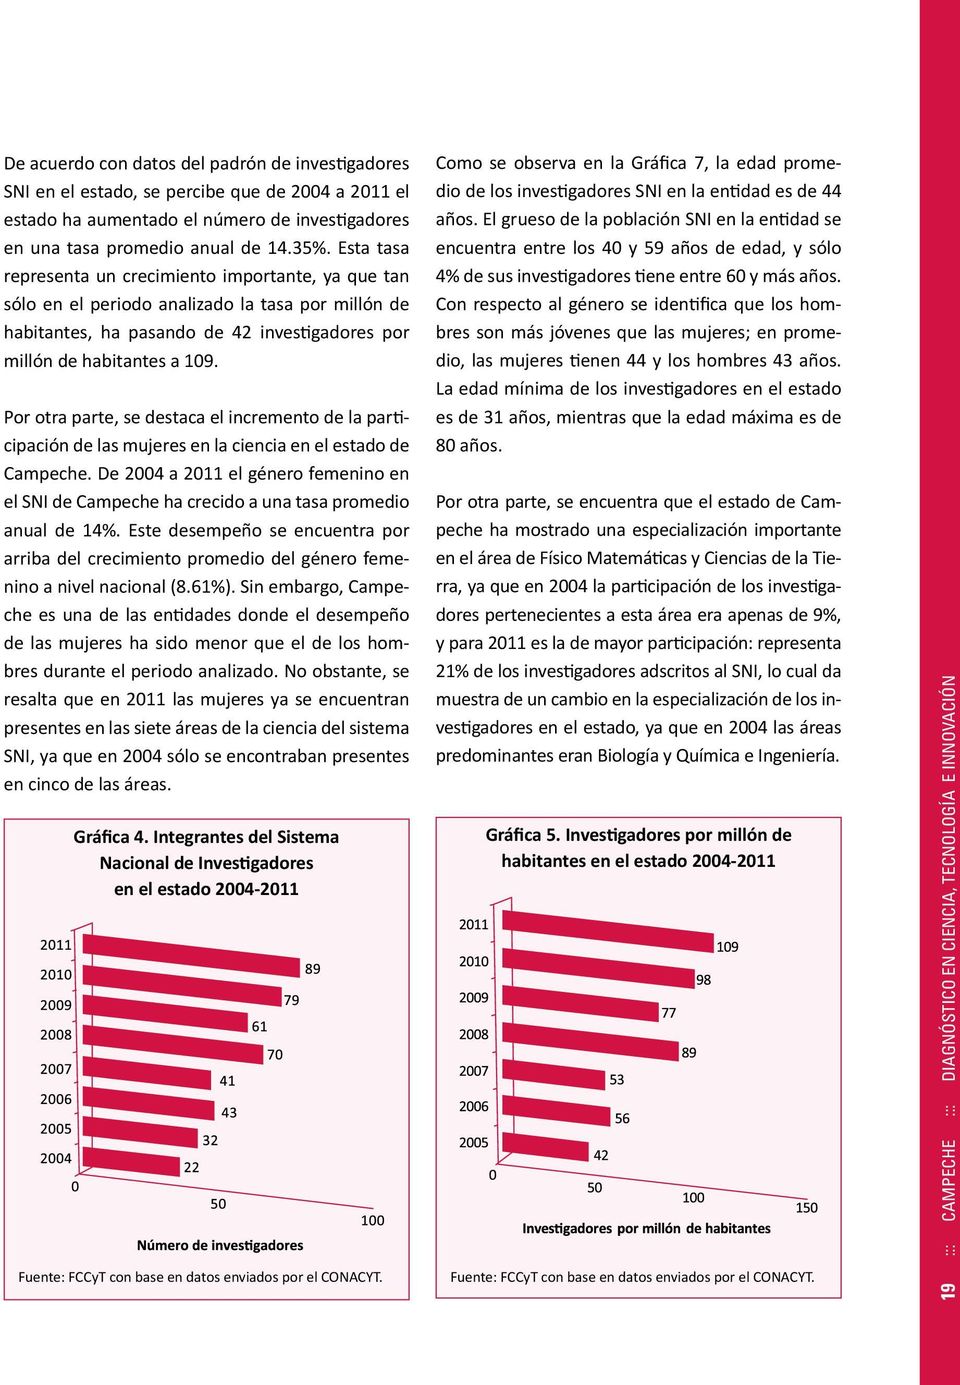 Por otra parte, se destaca el incremento de la participación de las mujeres en la ciencia en el estado de Campeche.